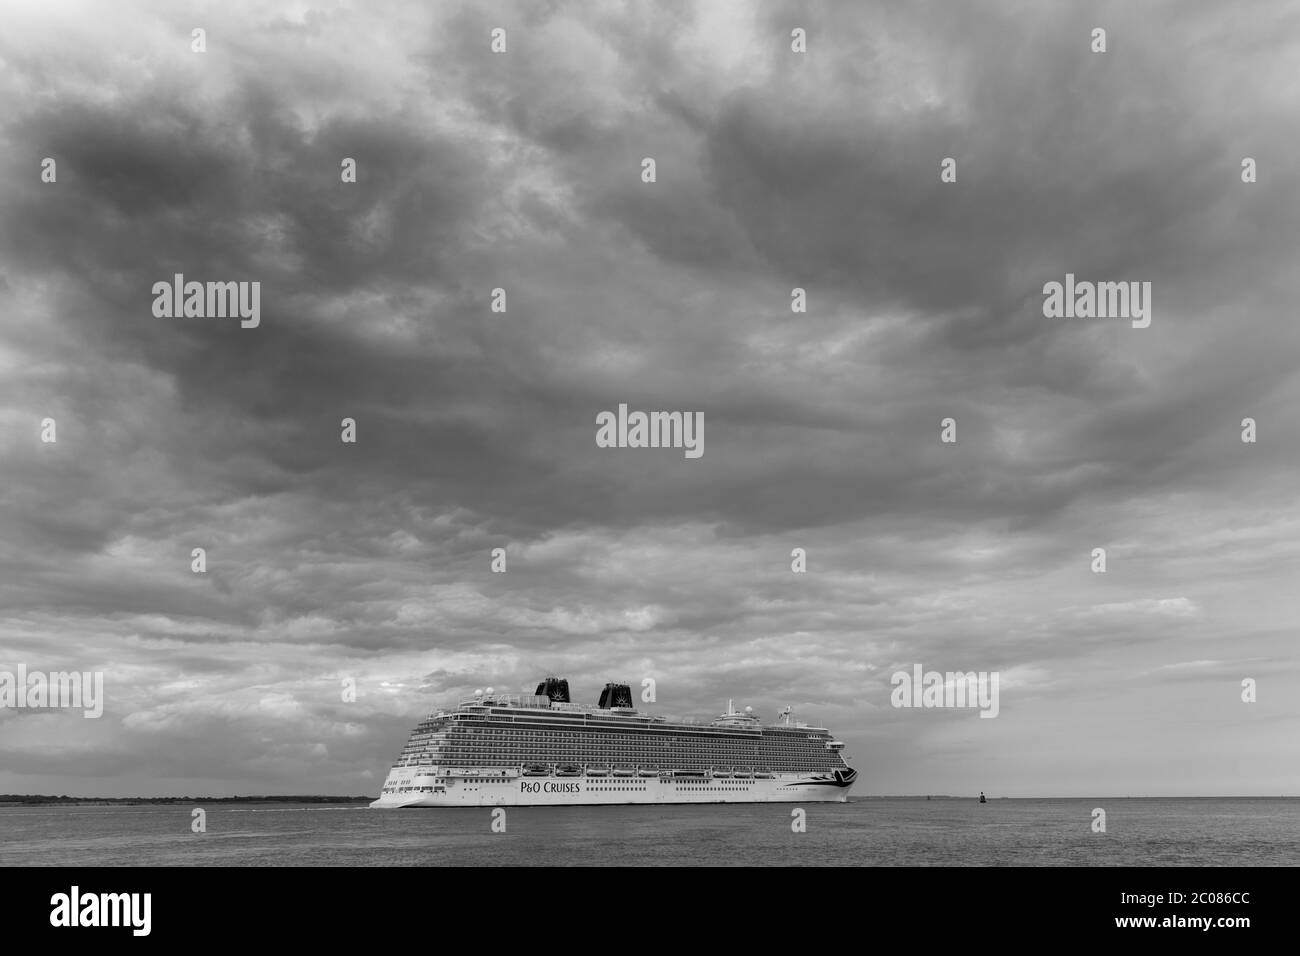 MV Britannia, le navire-amiral P&O, quitte les quais de Southampton pour Weymouth Bay, Southampton Water, Hampshire. Angleterre, Royaume-Uni. Banque D'Images